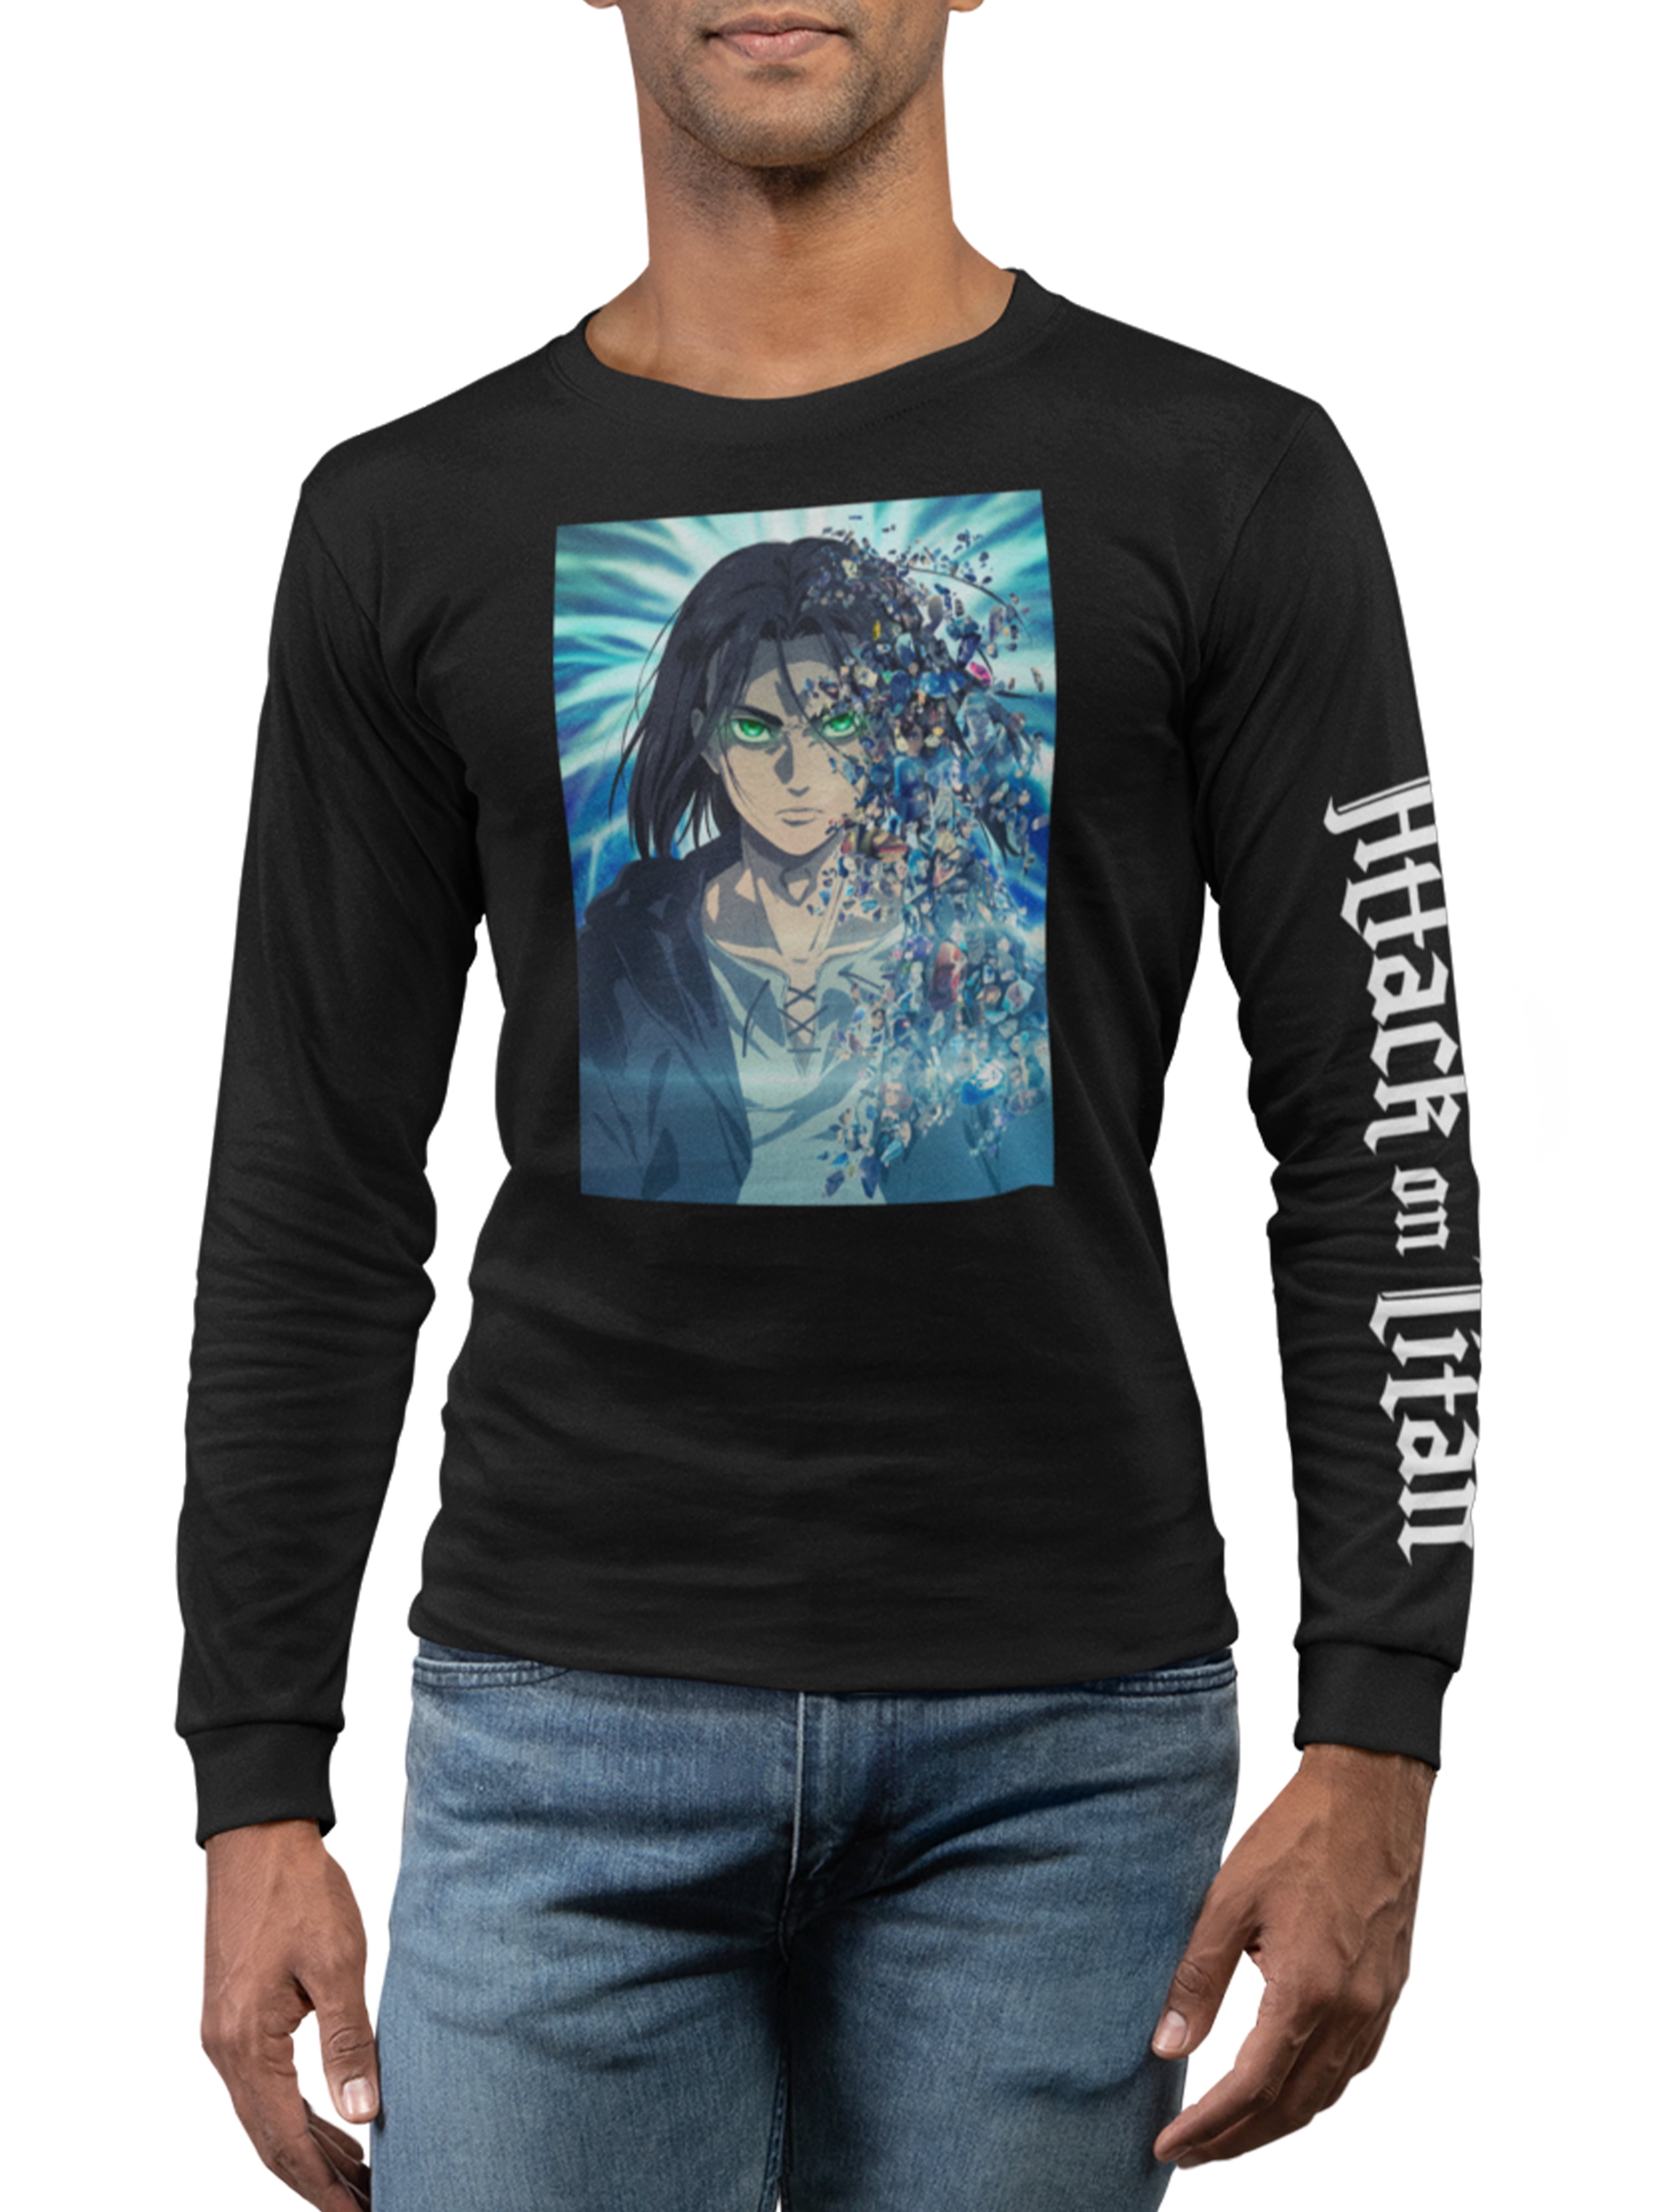 Anime theme tshirt